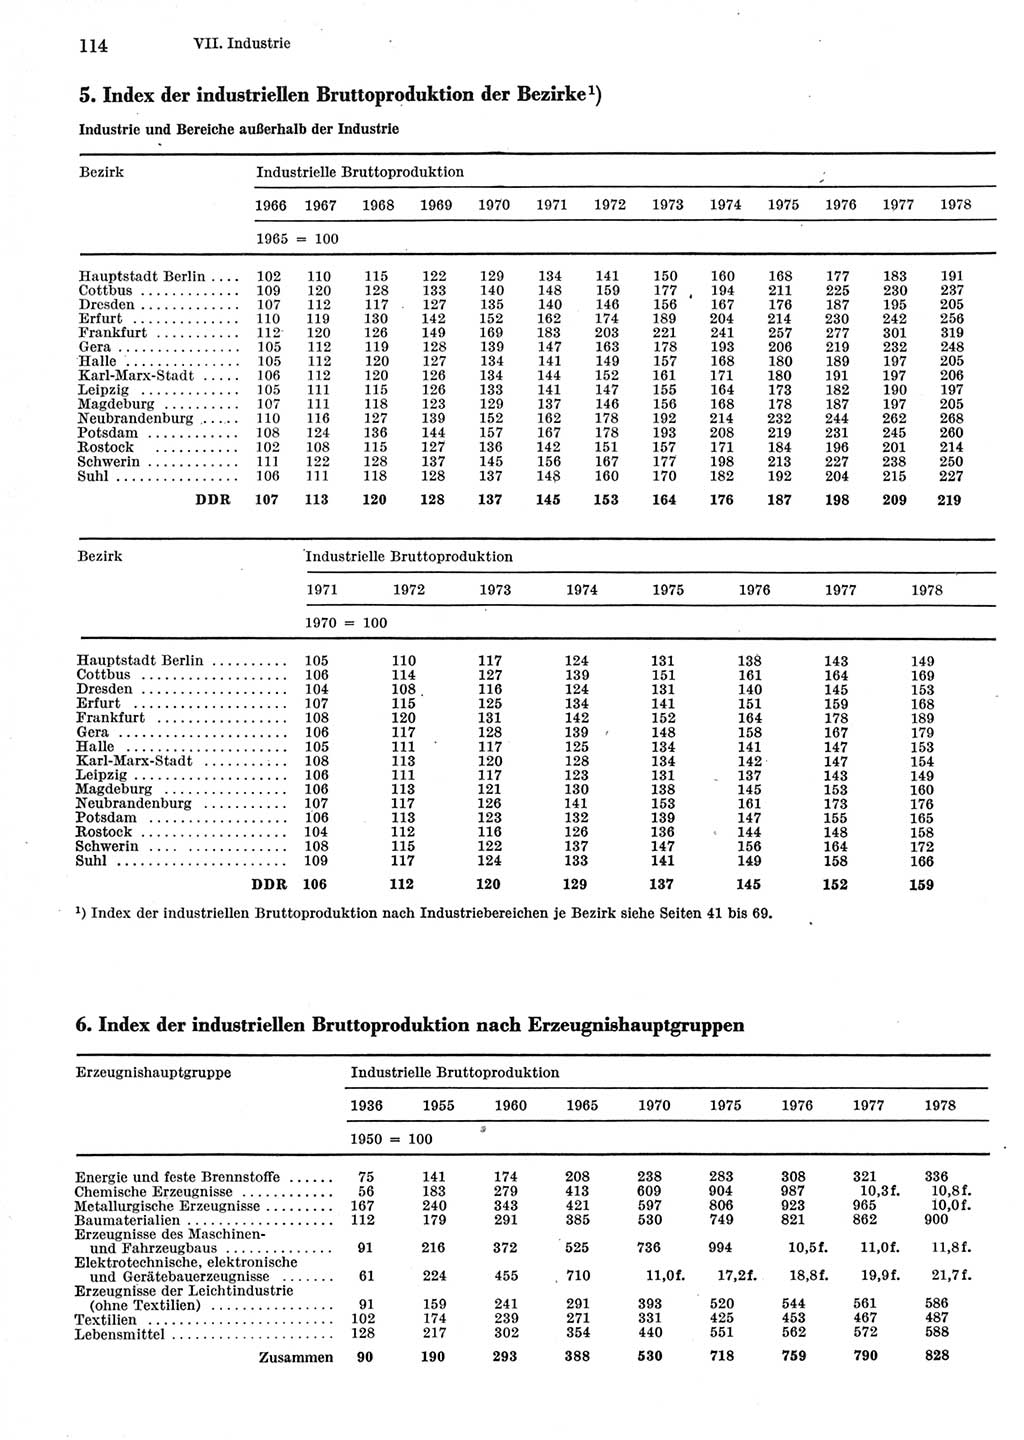 Statistisches Jahrbuch der Deutschen Demokratischen Republik (DDR) 1979, Seite 114 (Stat. Jb. DDR 1979, S. 114)